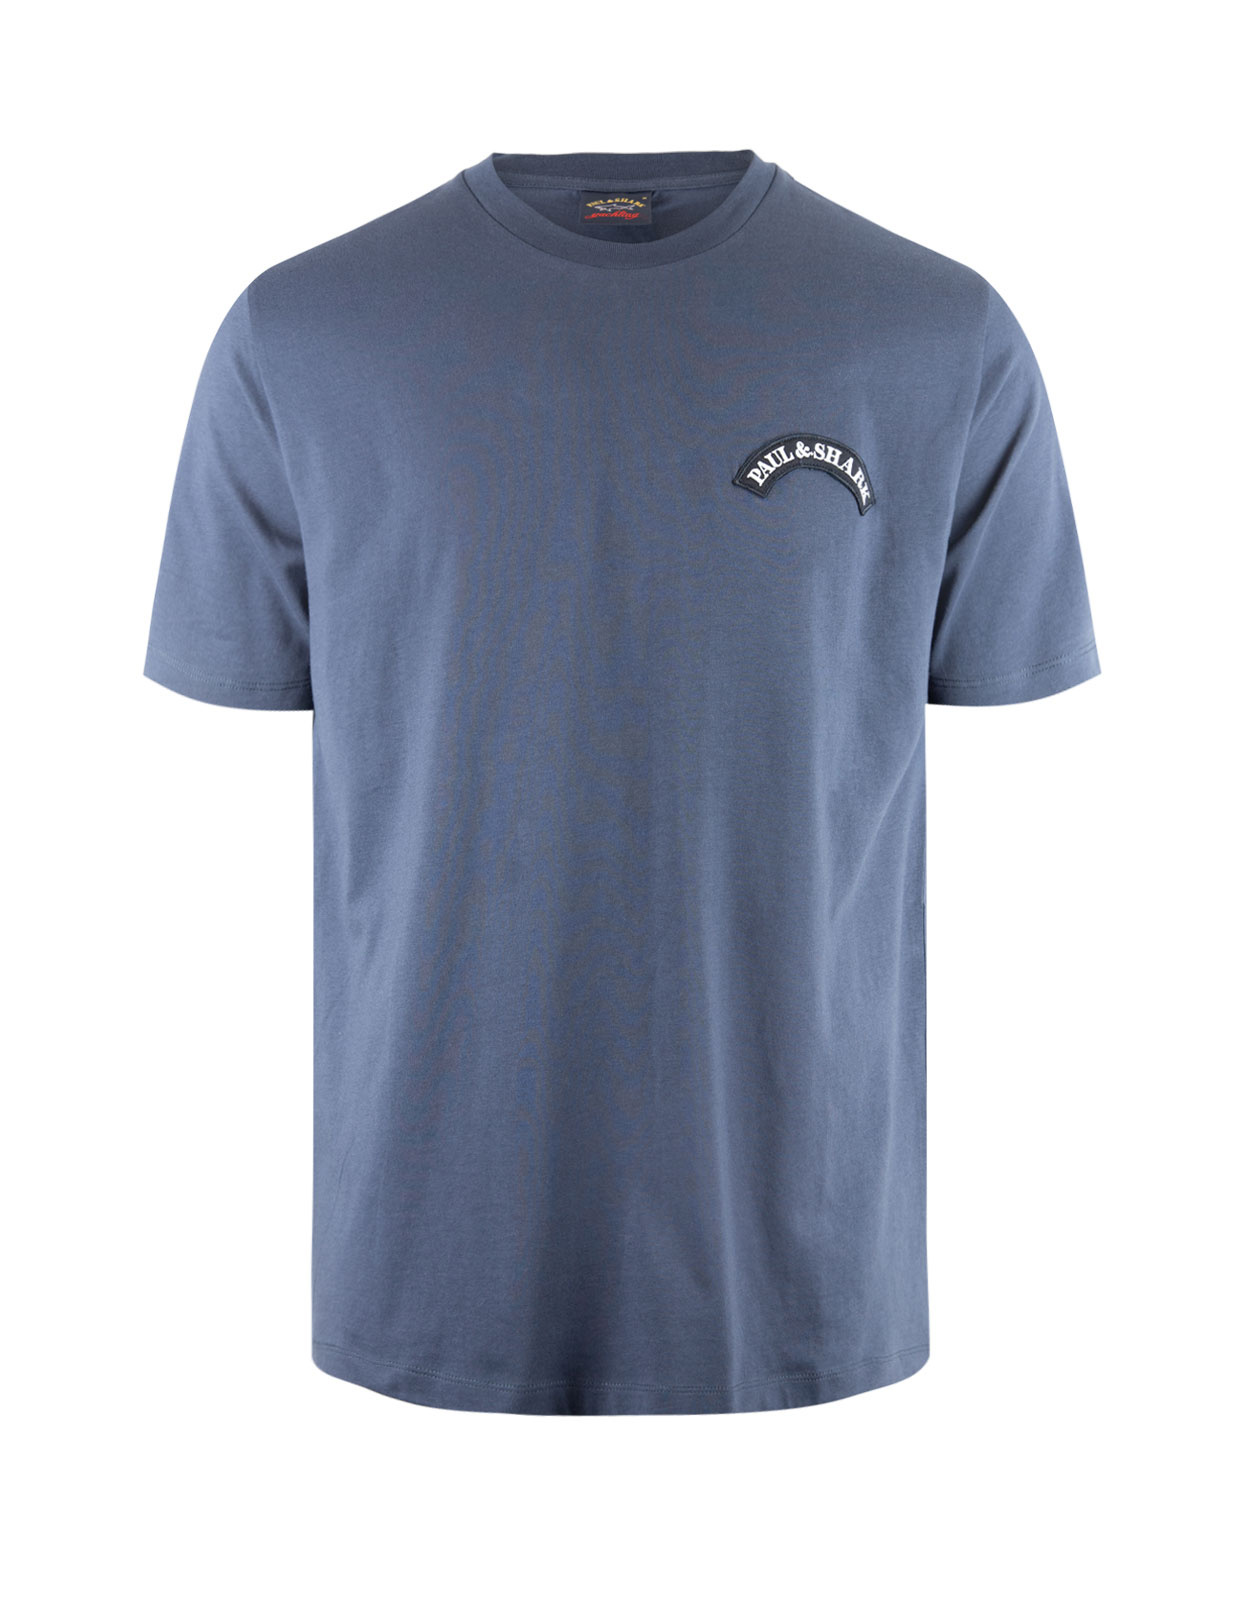 Shark Print T-Shirt Navy